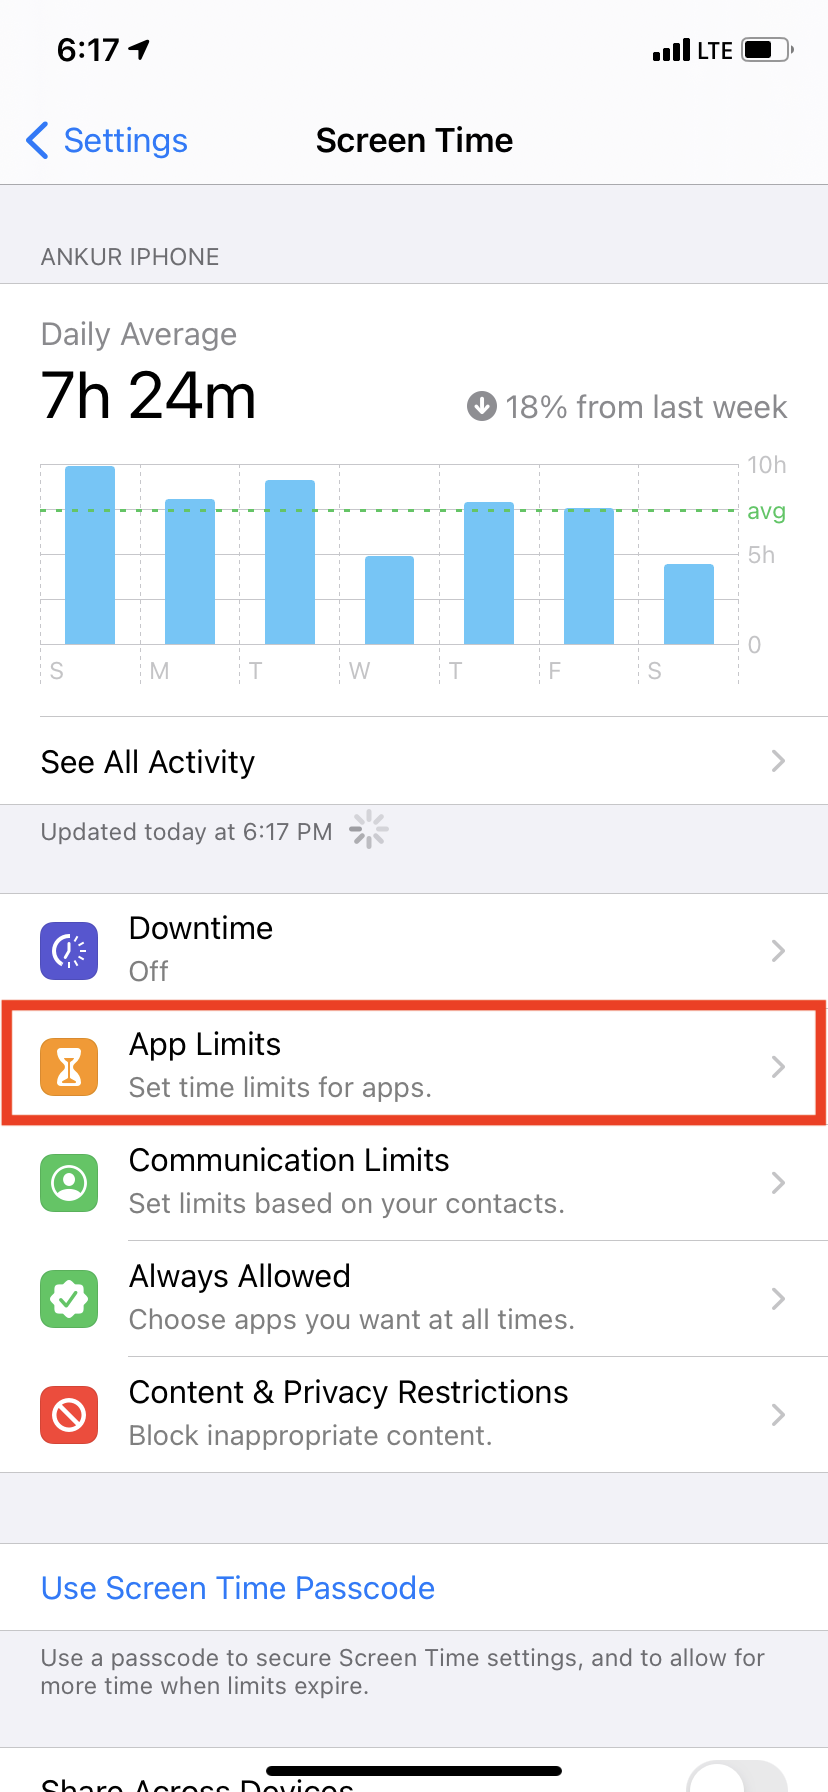 روی App Limits در تنظیمات زمان صفحه آیفون ضربه بزنید